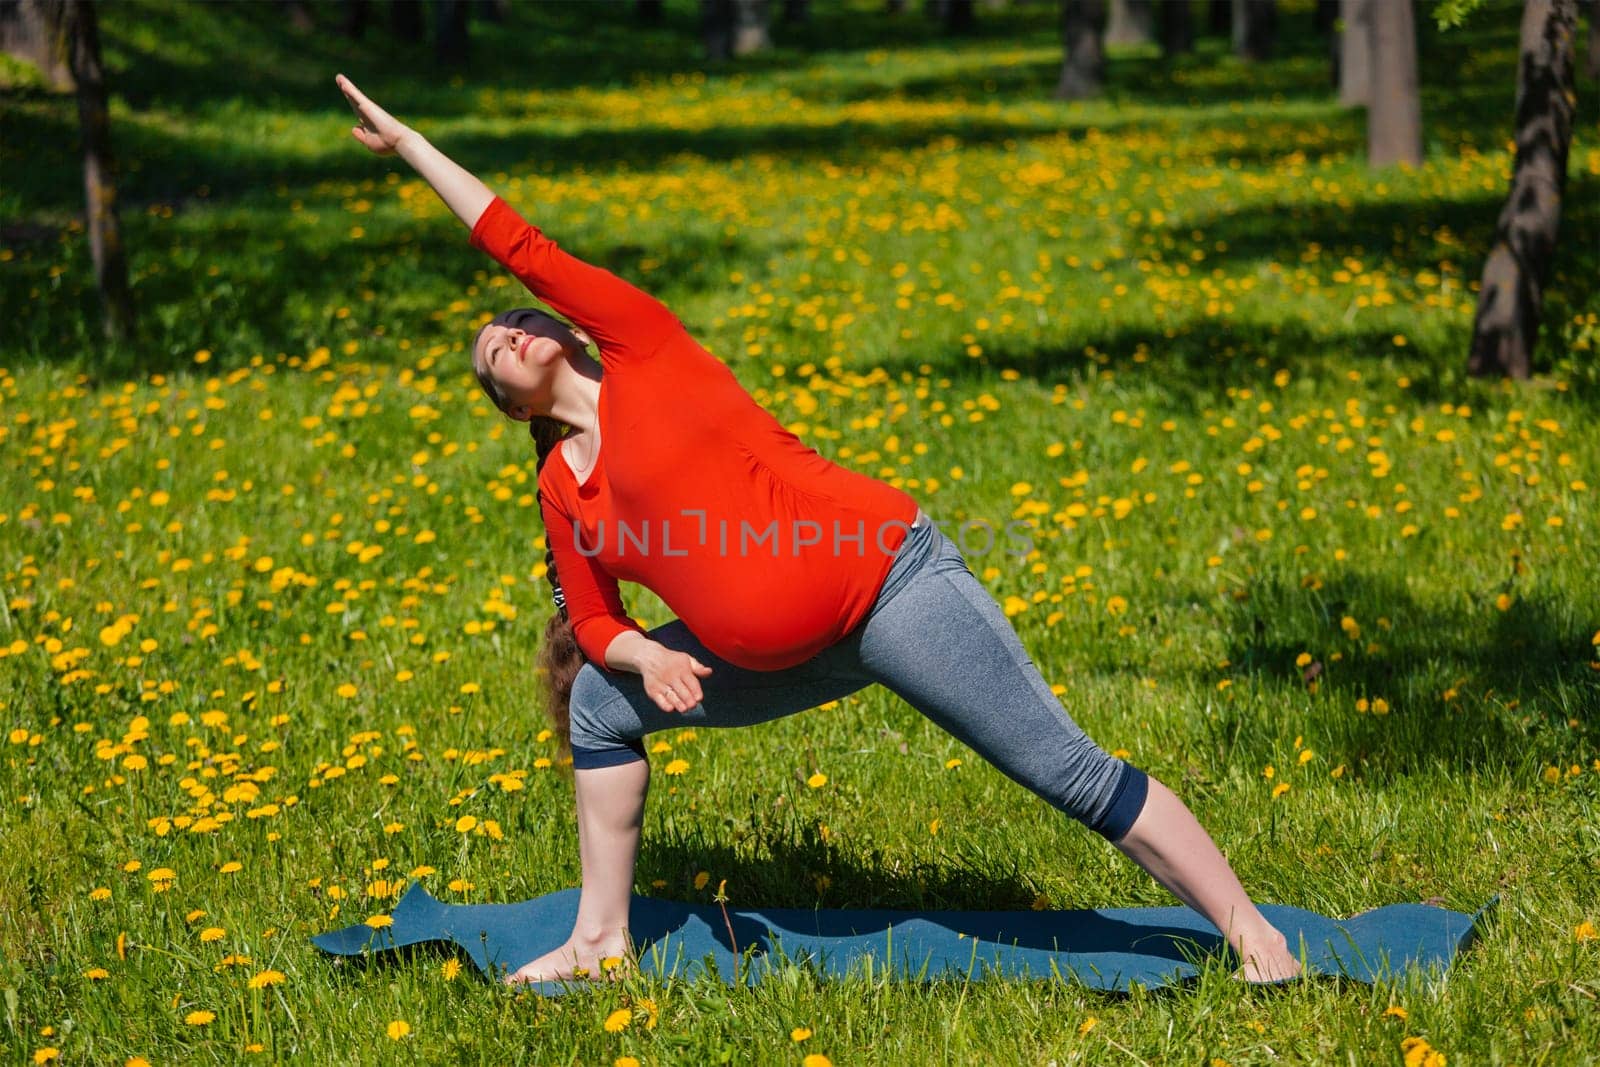 Pregnancy yoga exercise - pregnant woman doing asana Utthita parsvakonasana outdoors on grass in summer